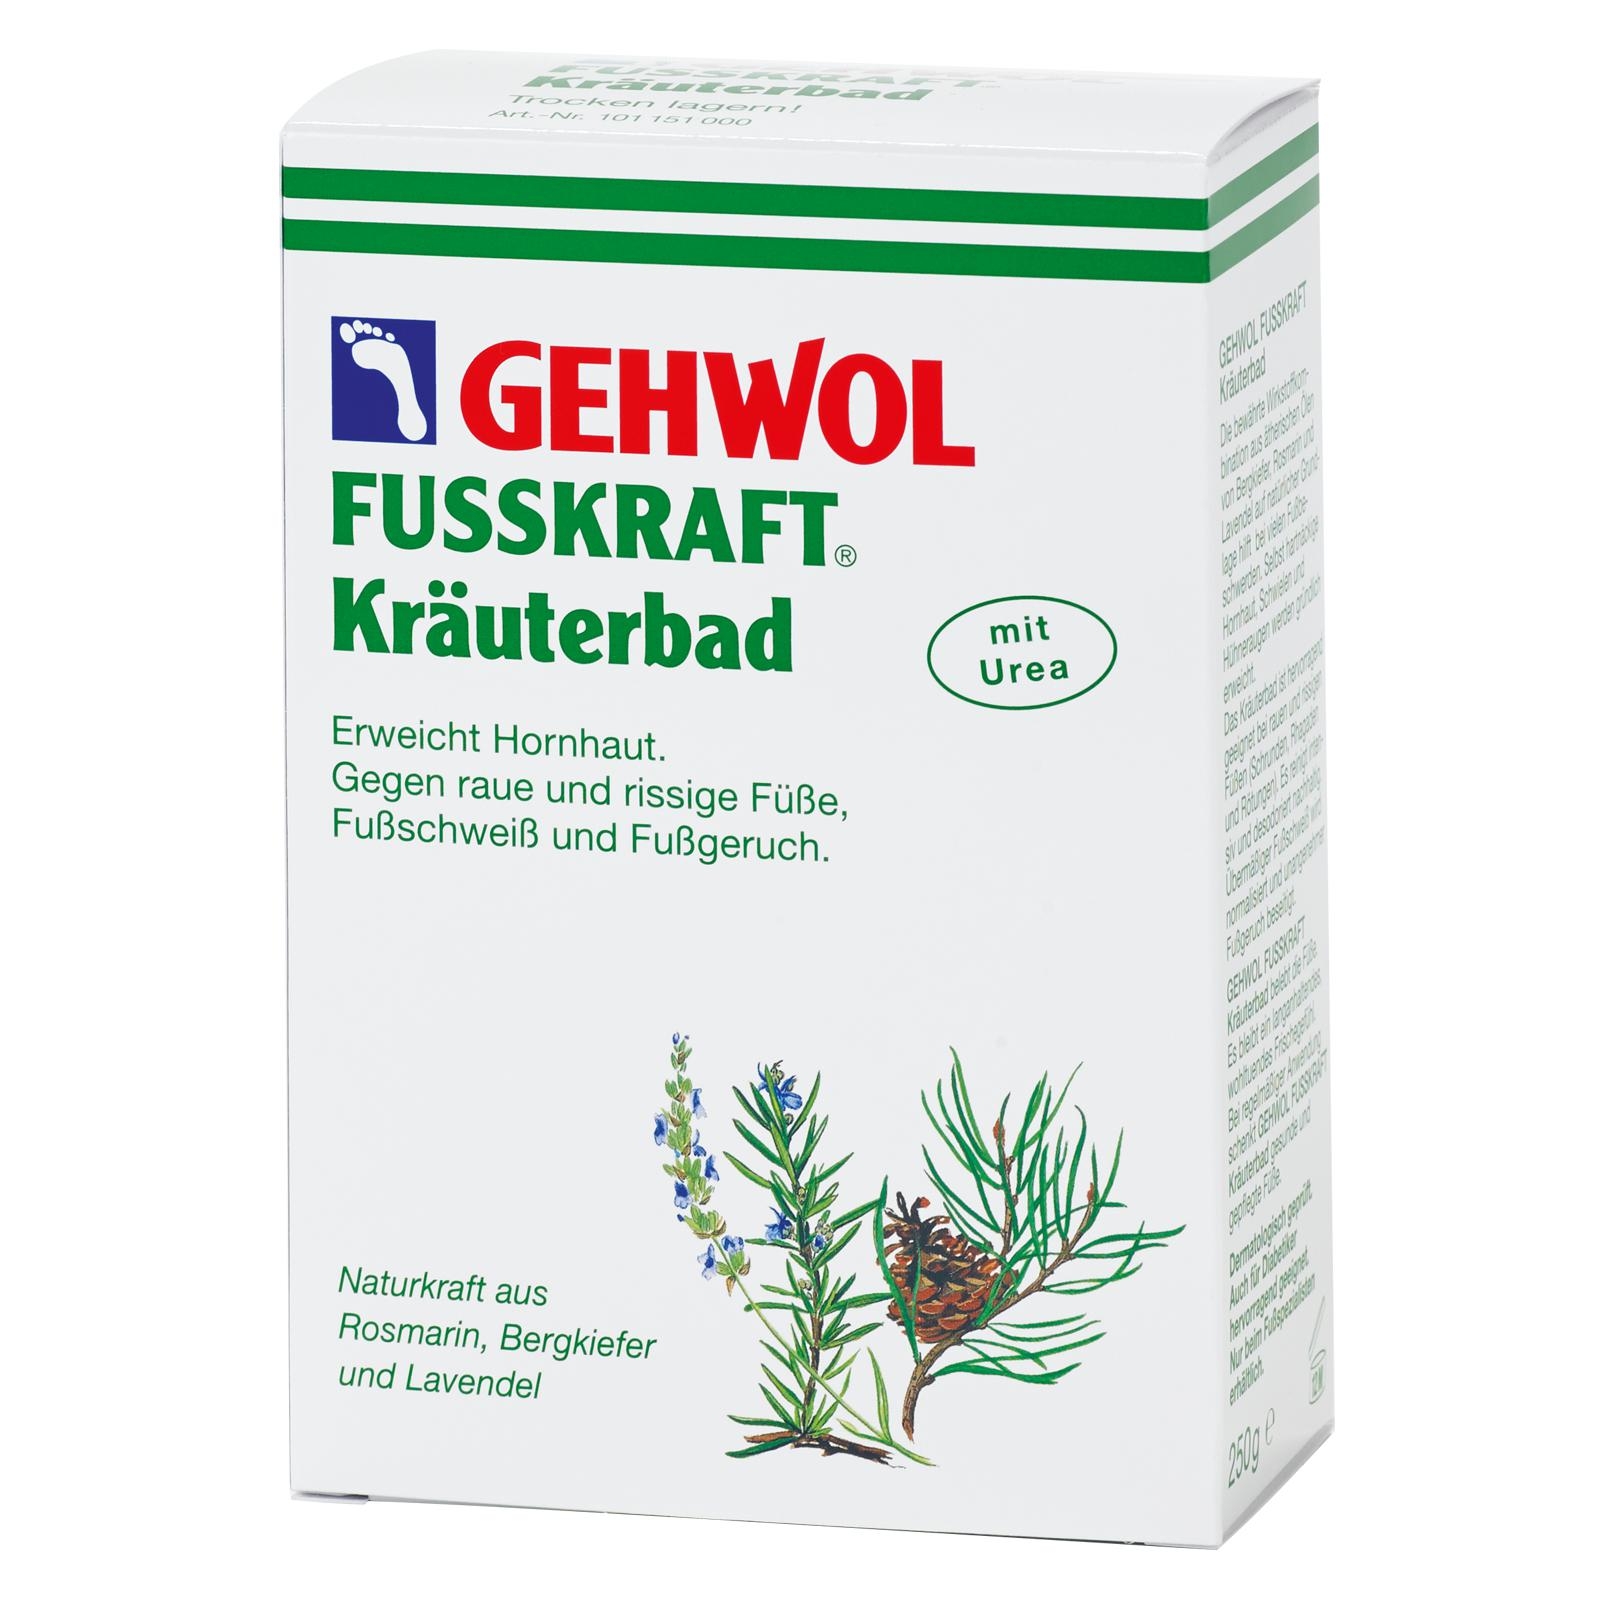 GEHWOL FUSSKRAFT Kräuterbad Faltschachtel 250 g